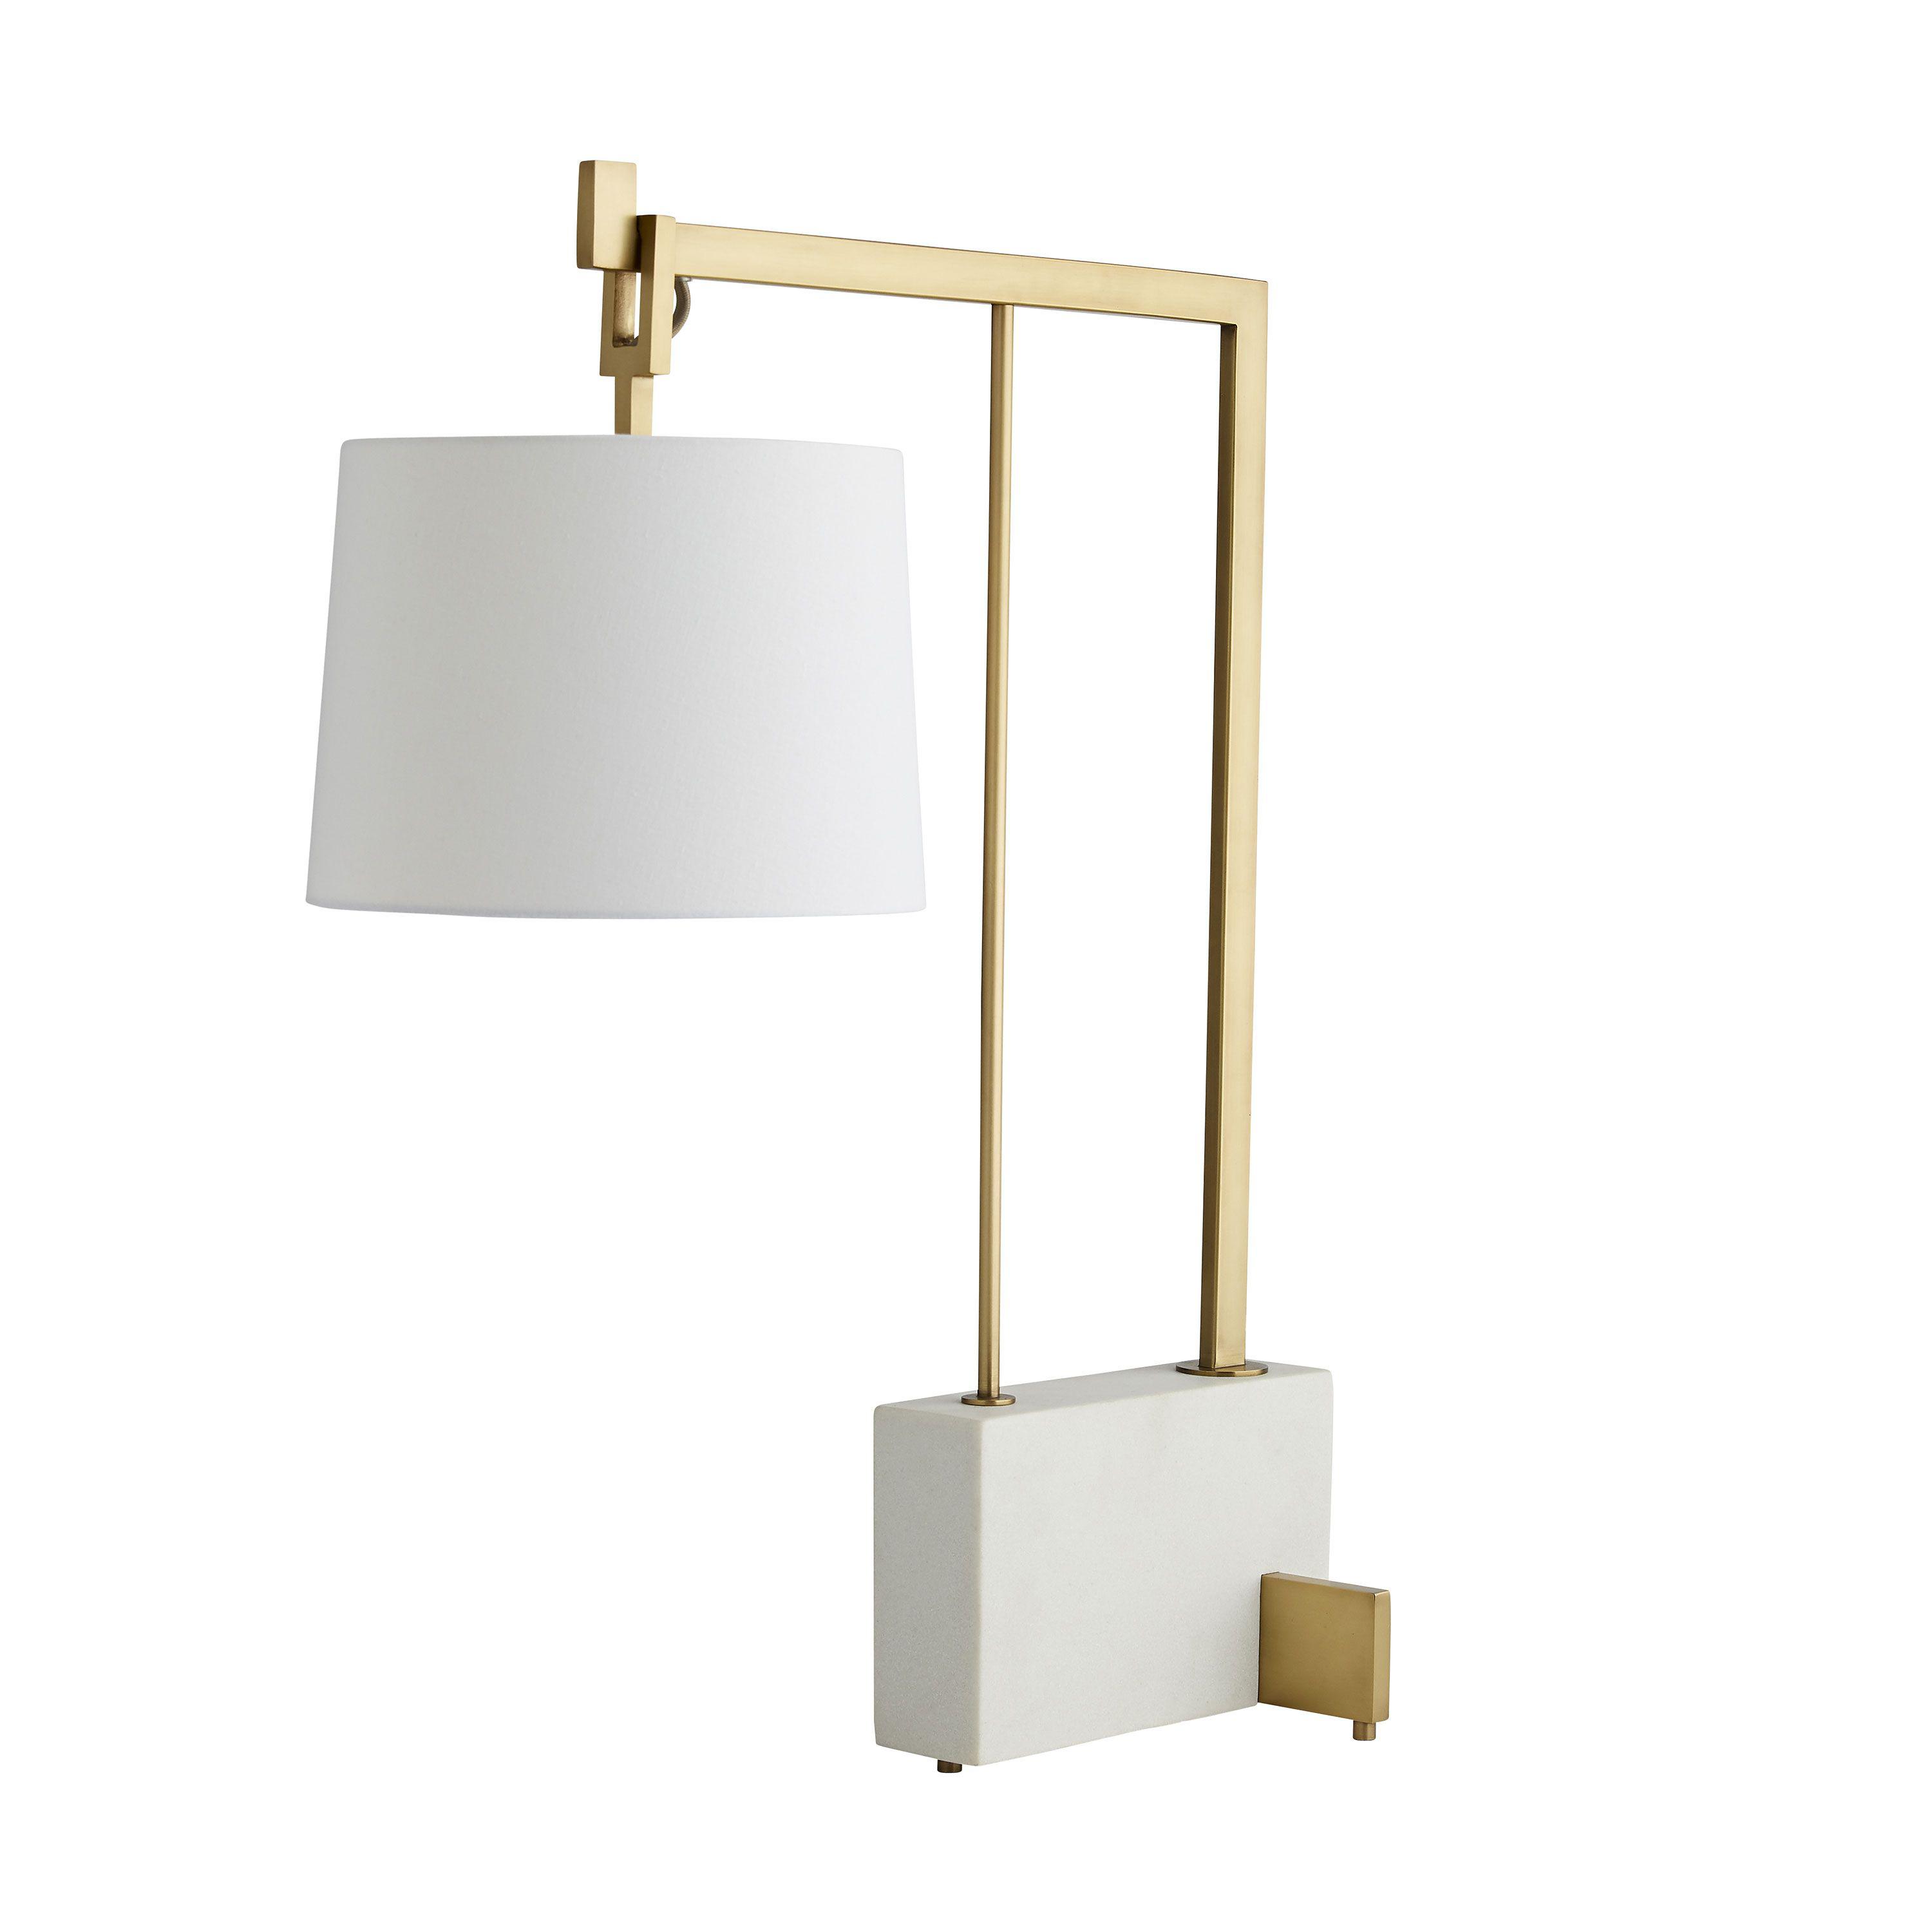 Купить Настольная лампа Piloti Lamp в интернет-магазине roooms.ru